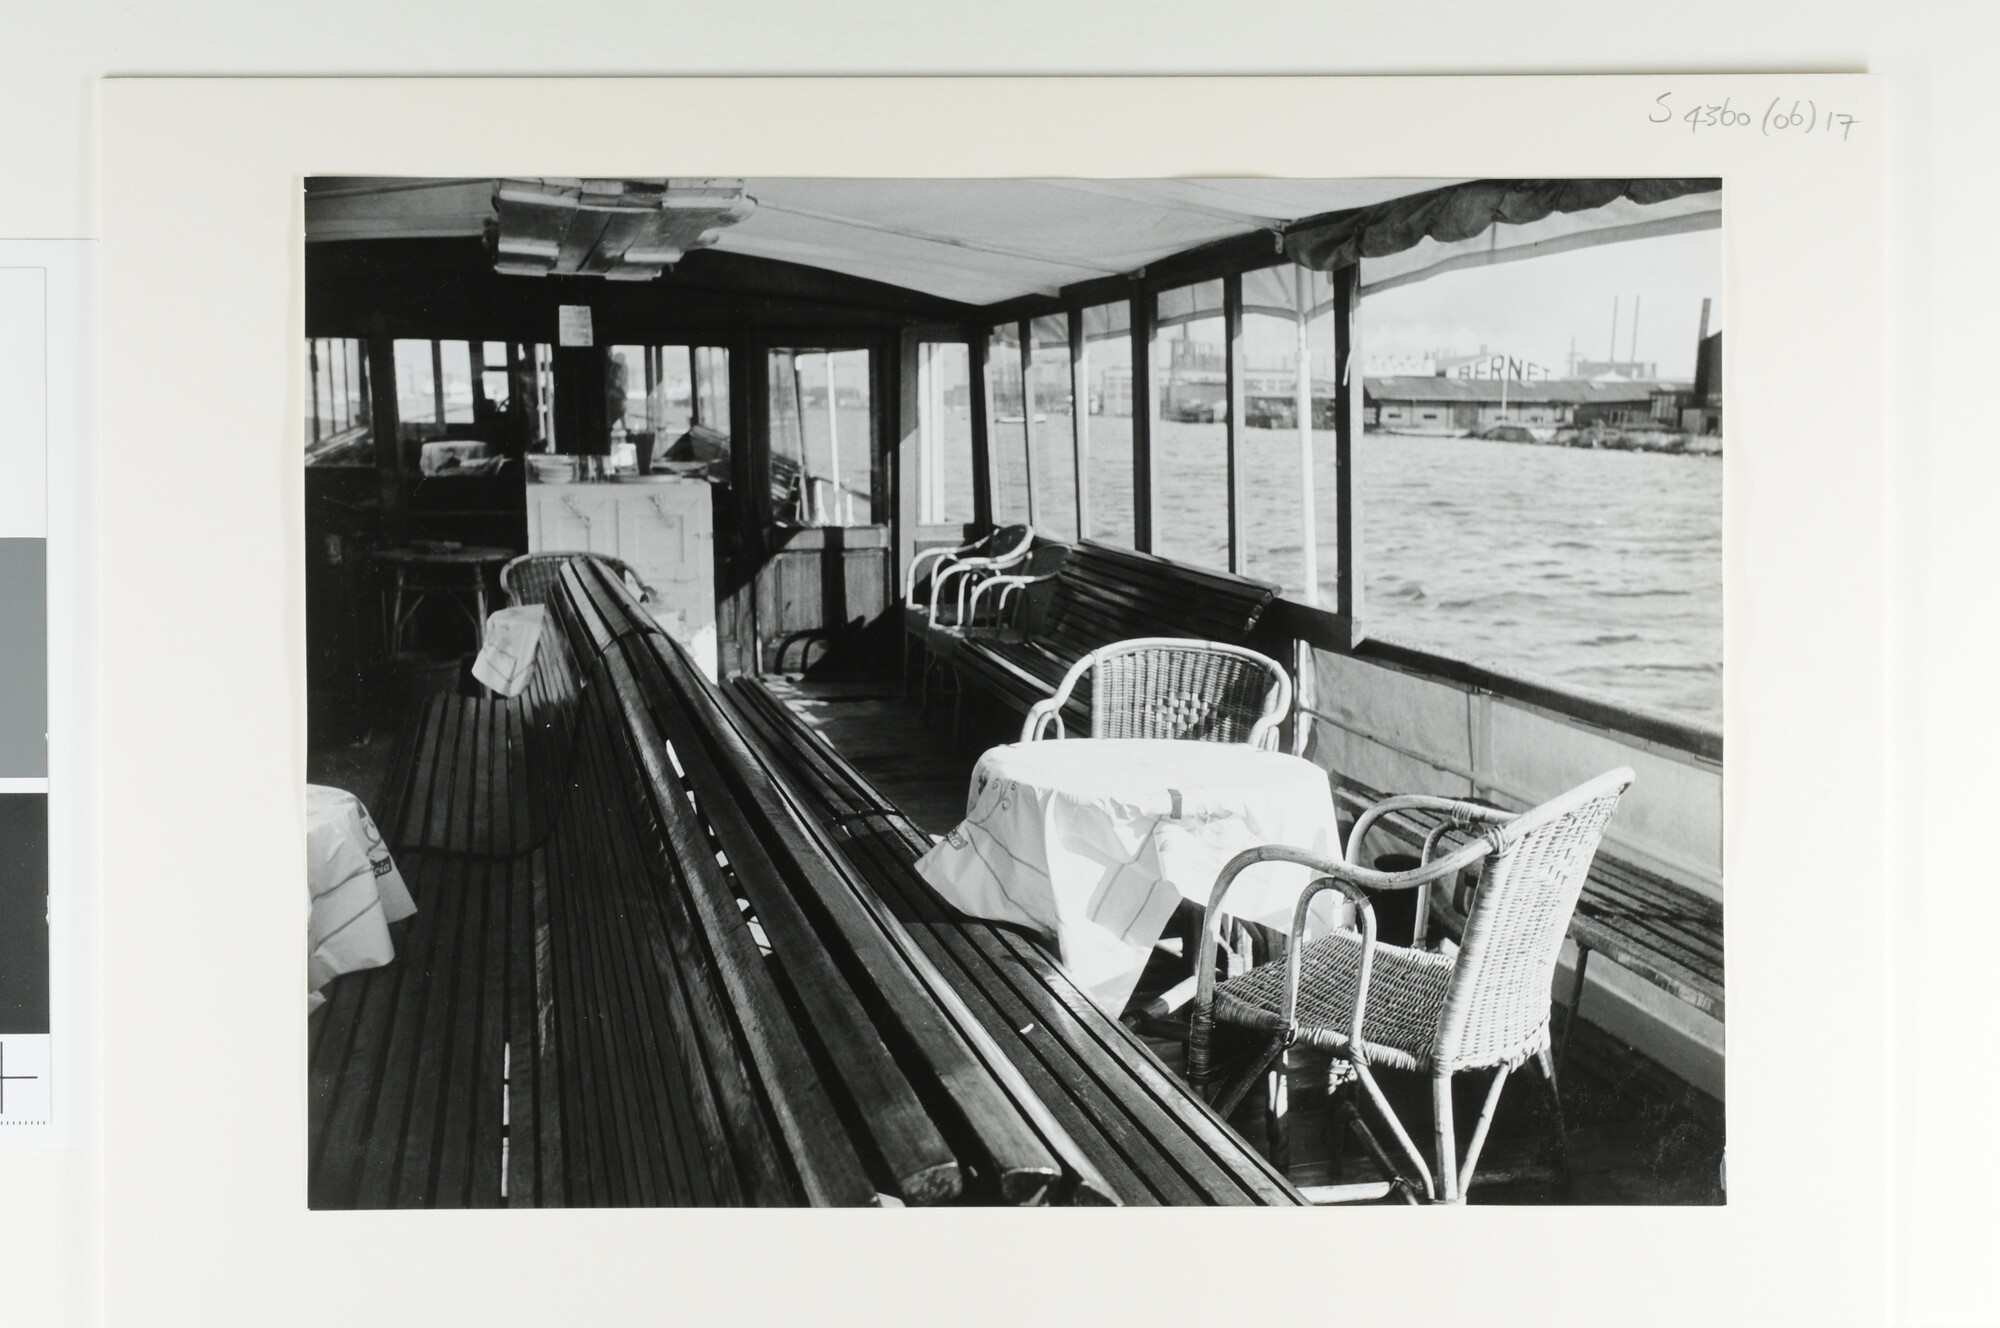 S.4360(06)17; Interieurfoto's genomen aan boord van het passagiersschip ms. 'Eemstroom'; fotoreportage